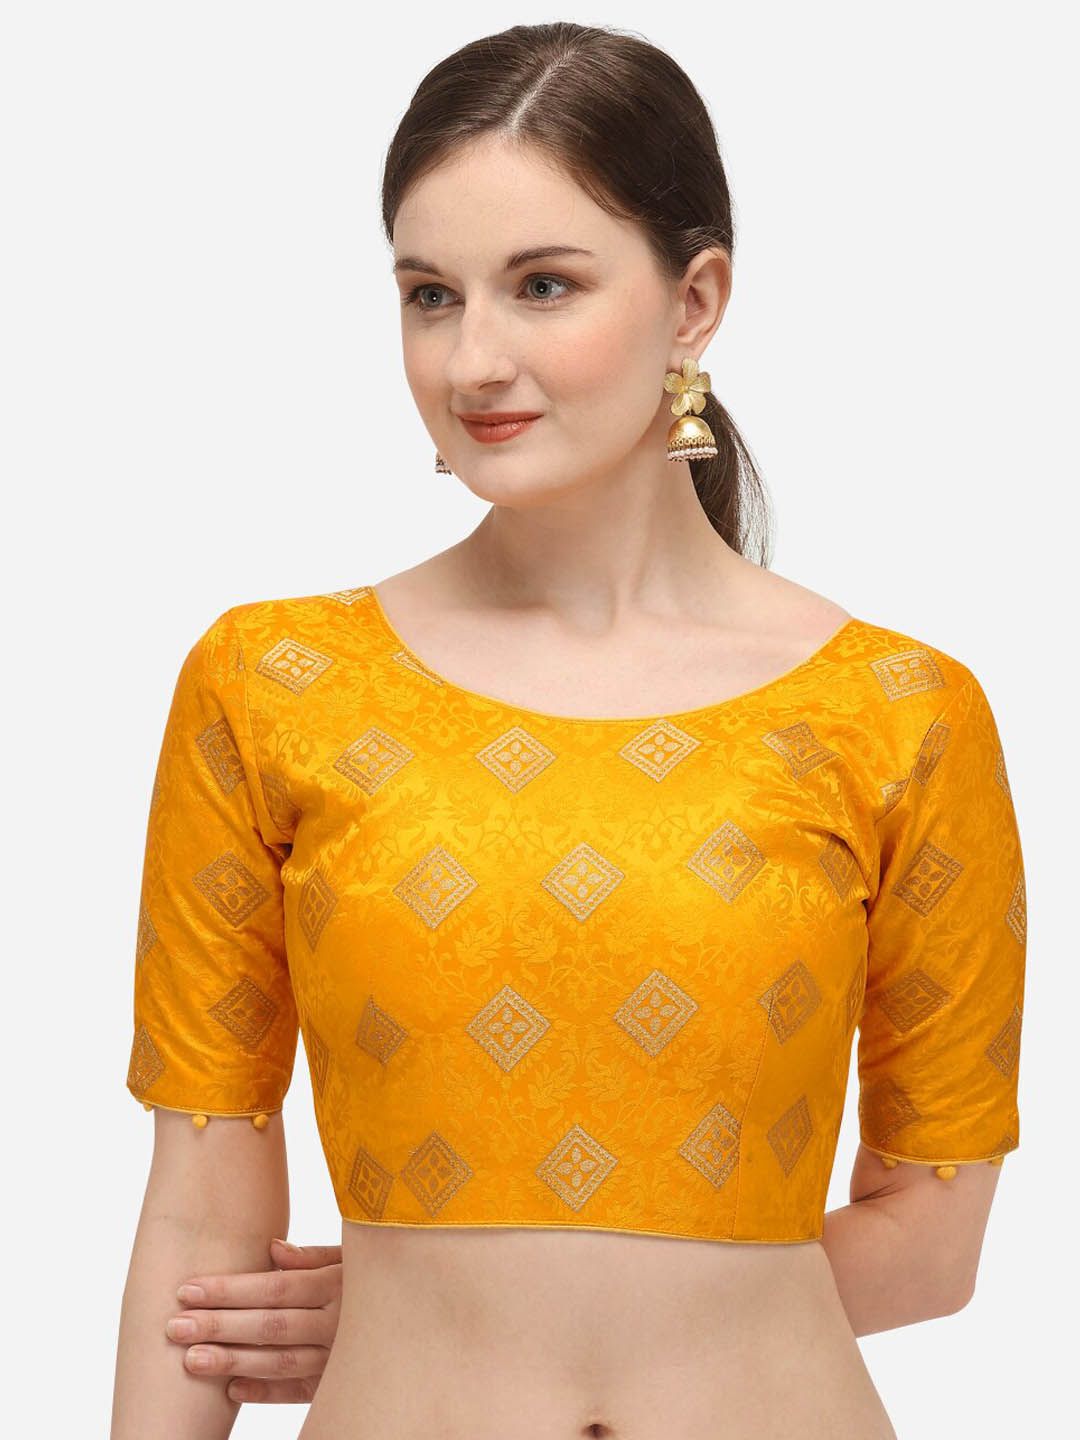 Fab Dadu  Yellow Printed Saree Blouse Price in India